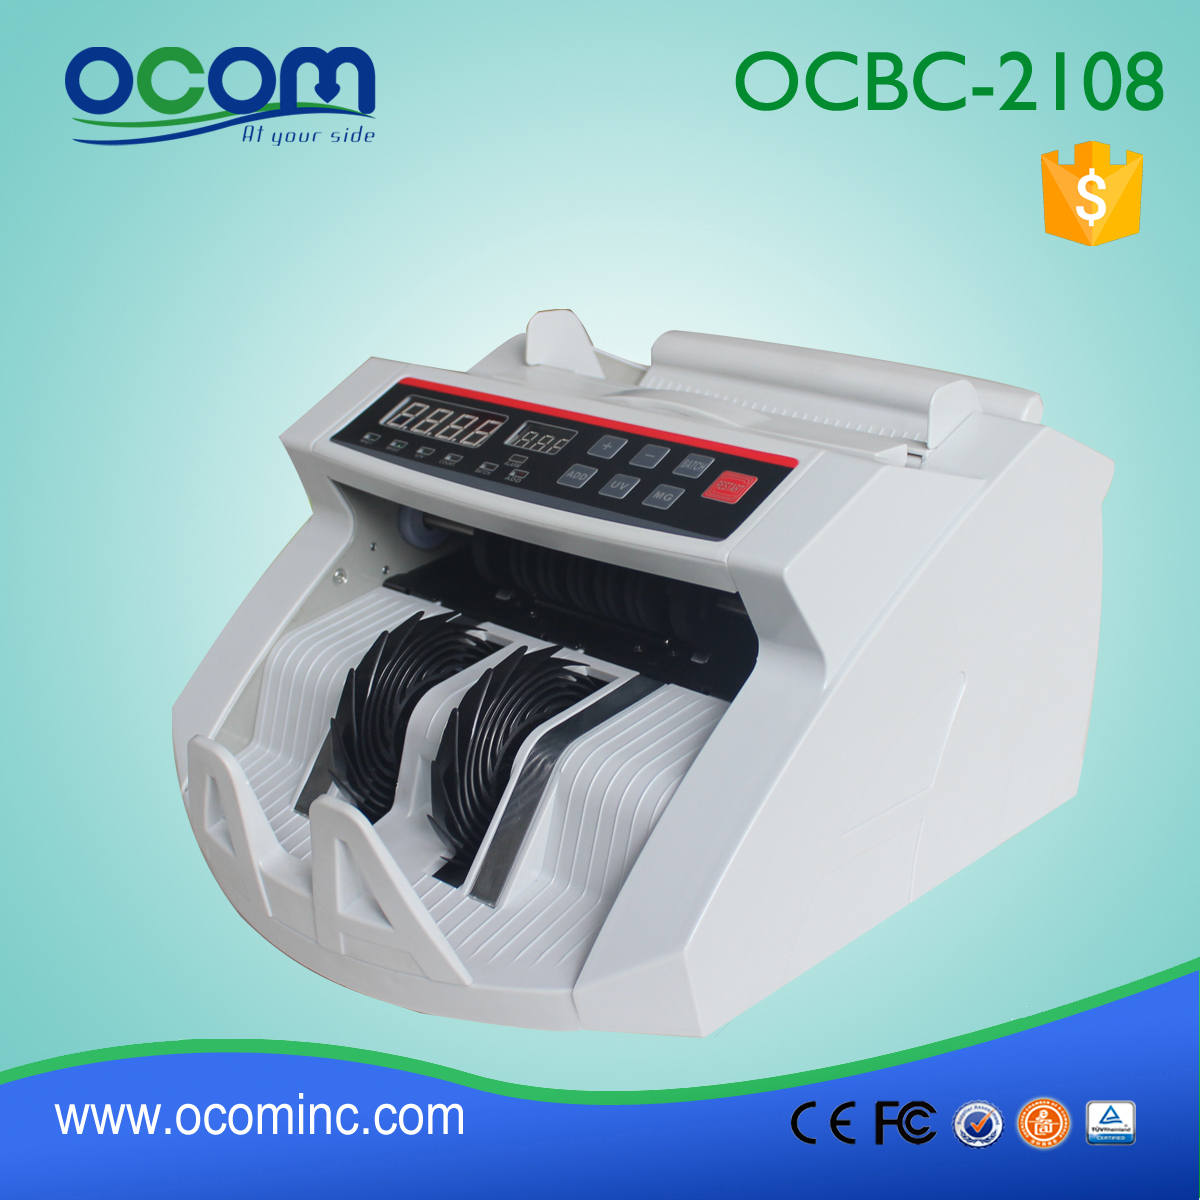 OCBC-2 108: le projet de loi Banknote devise Compteur avec Détecteur de faux